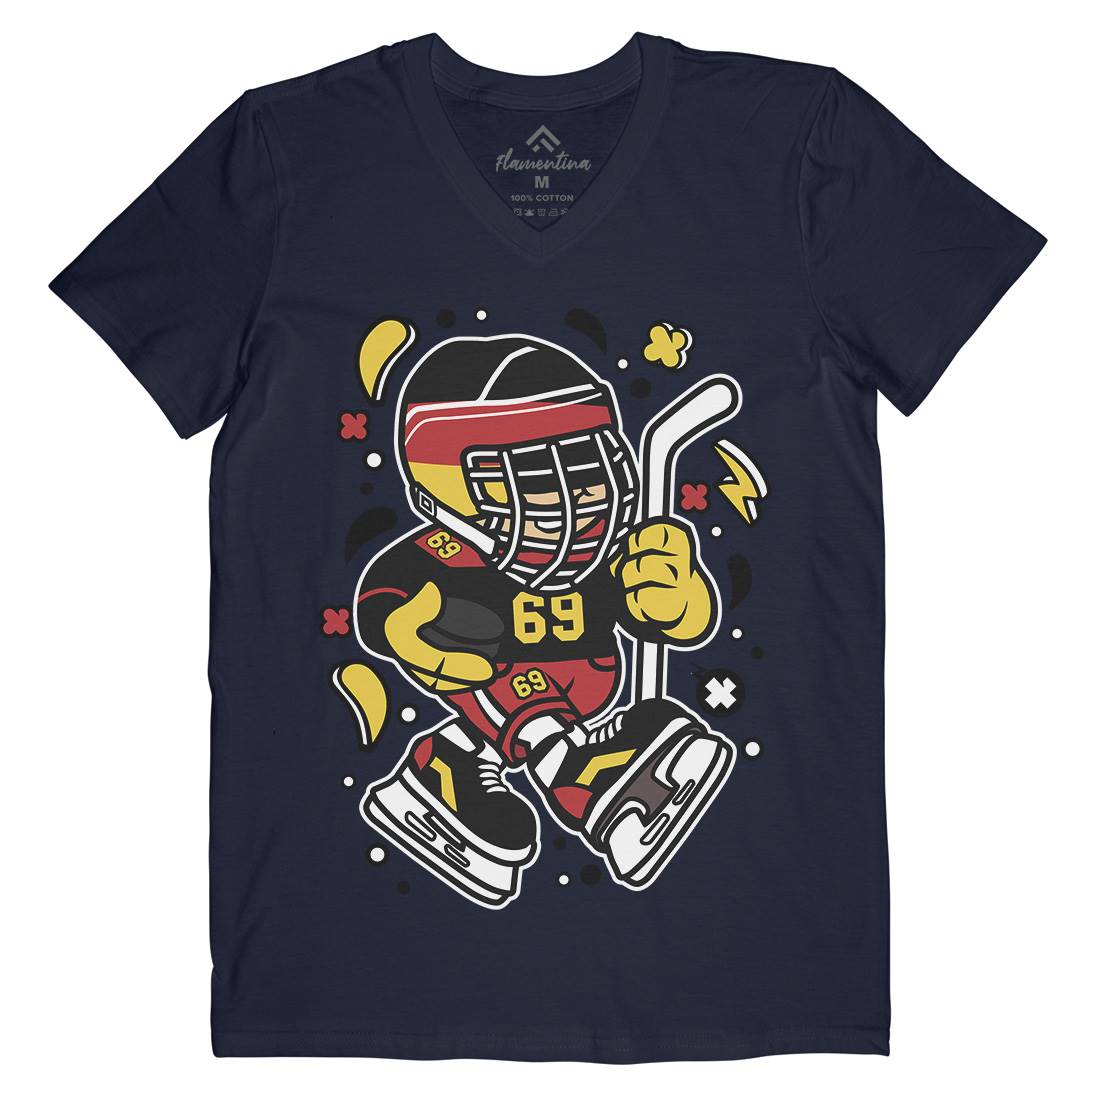 Germany Hockey Kid Mens V-Neck T-Shirt Sport C551